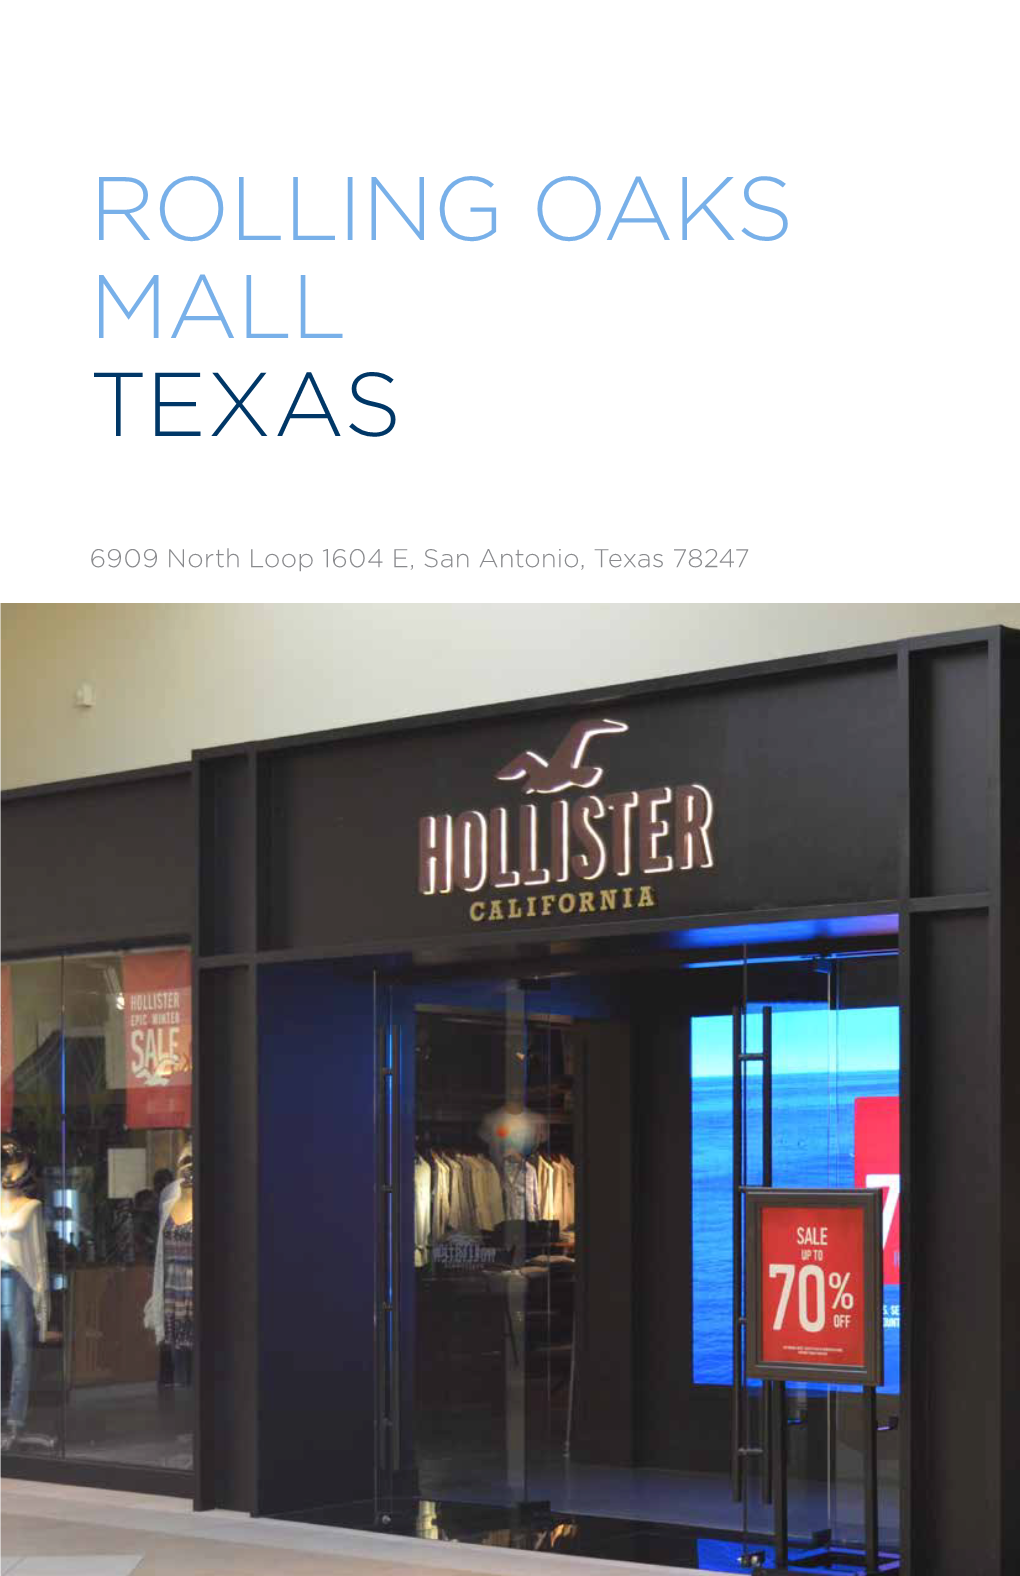 Rolling Oaks Mall Texas